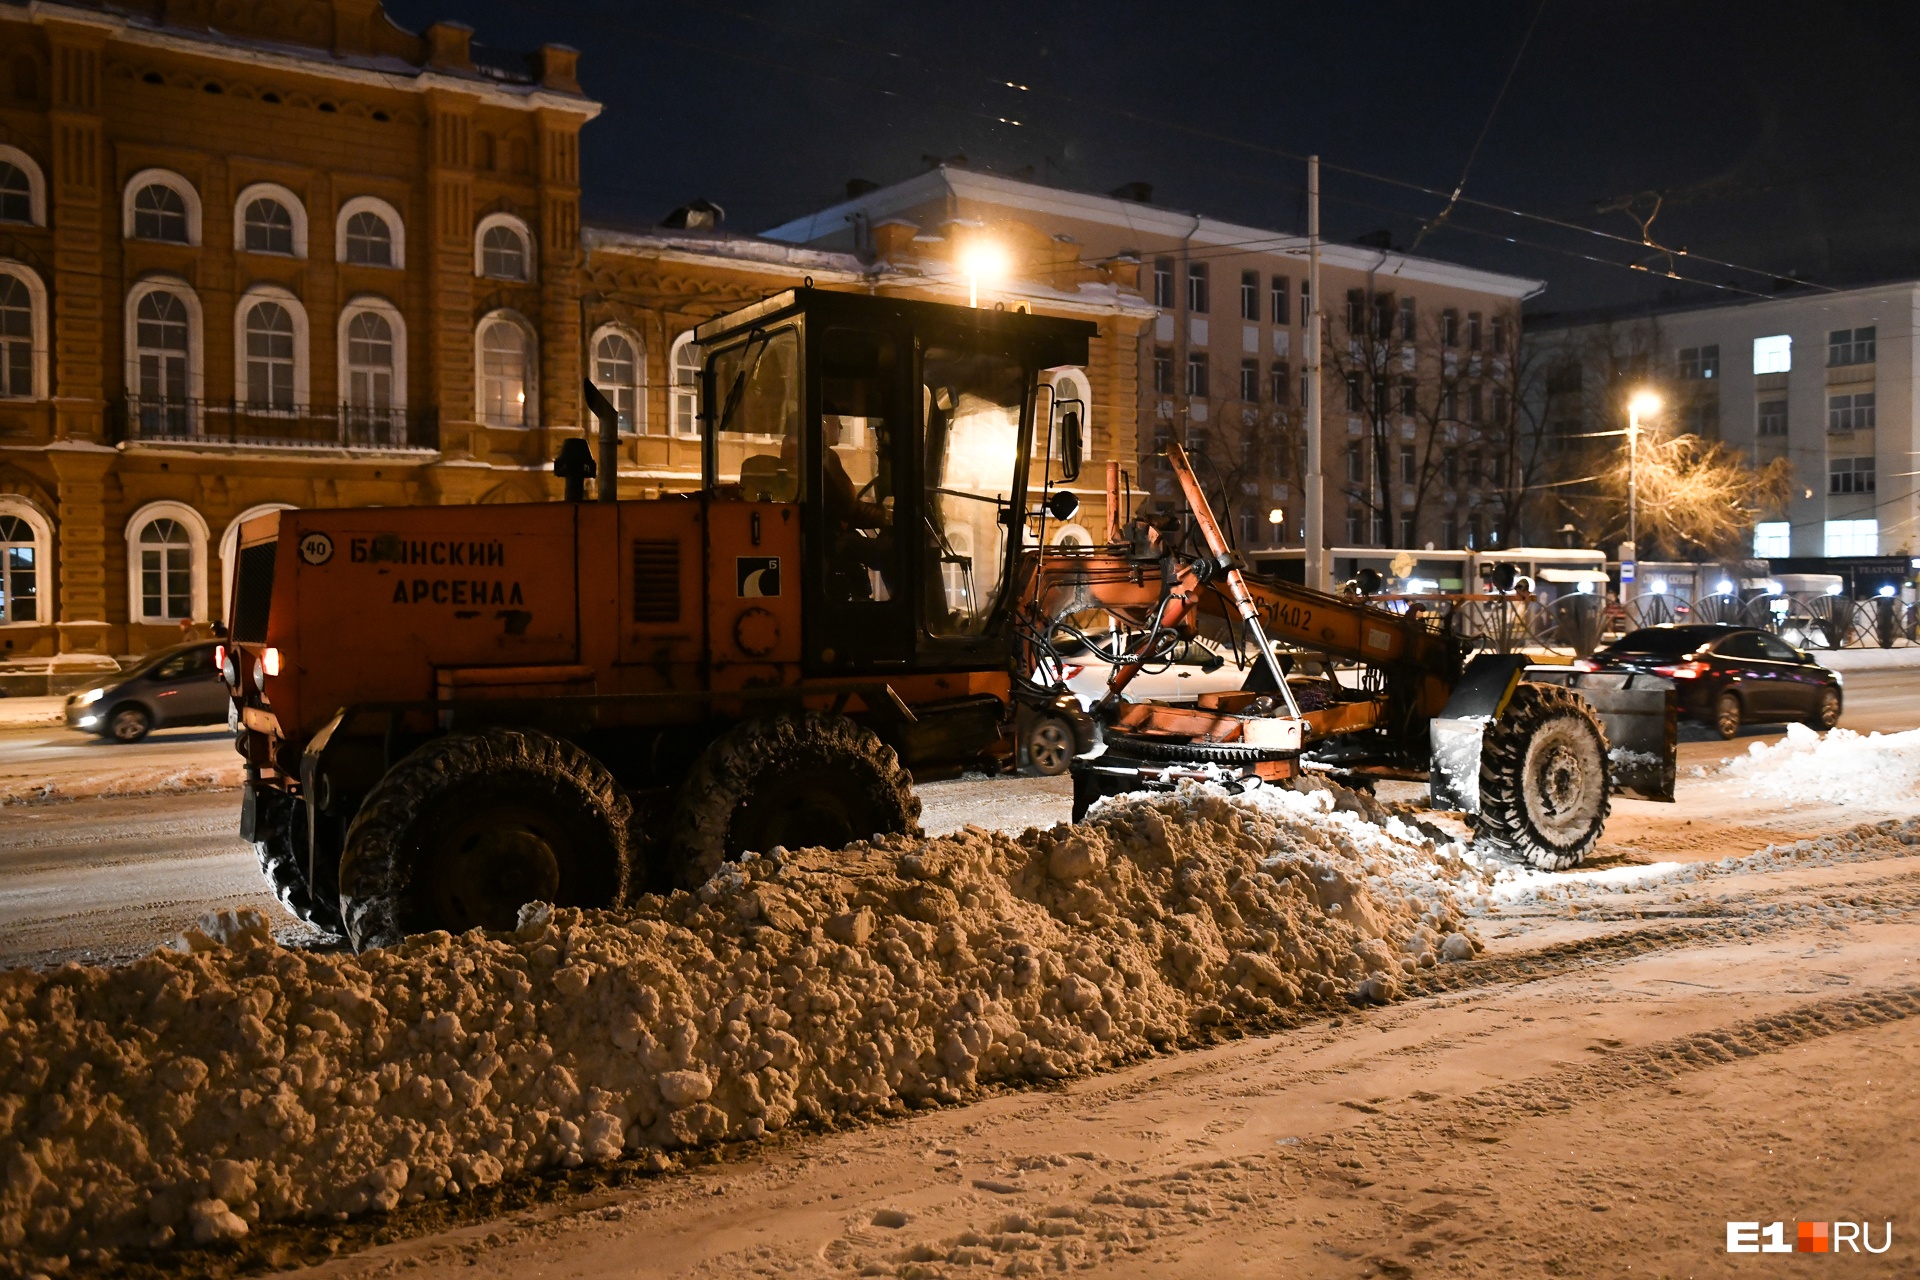 Работают на троечку. Екатеринбург стал четвертым по качеству уборки снега в России